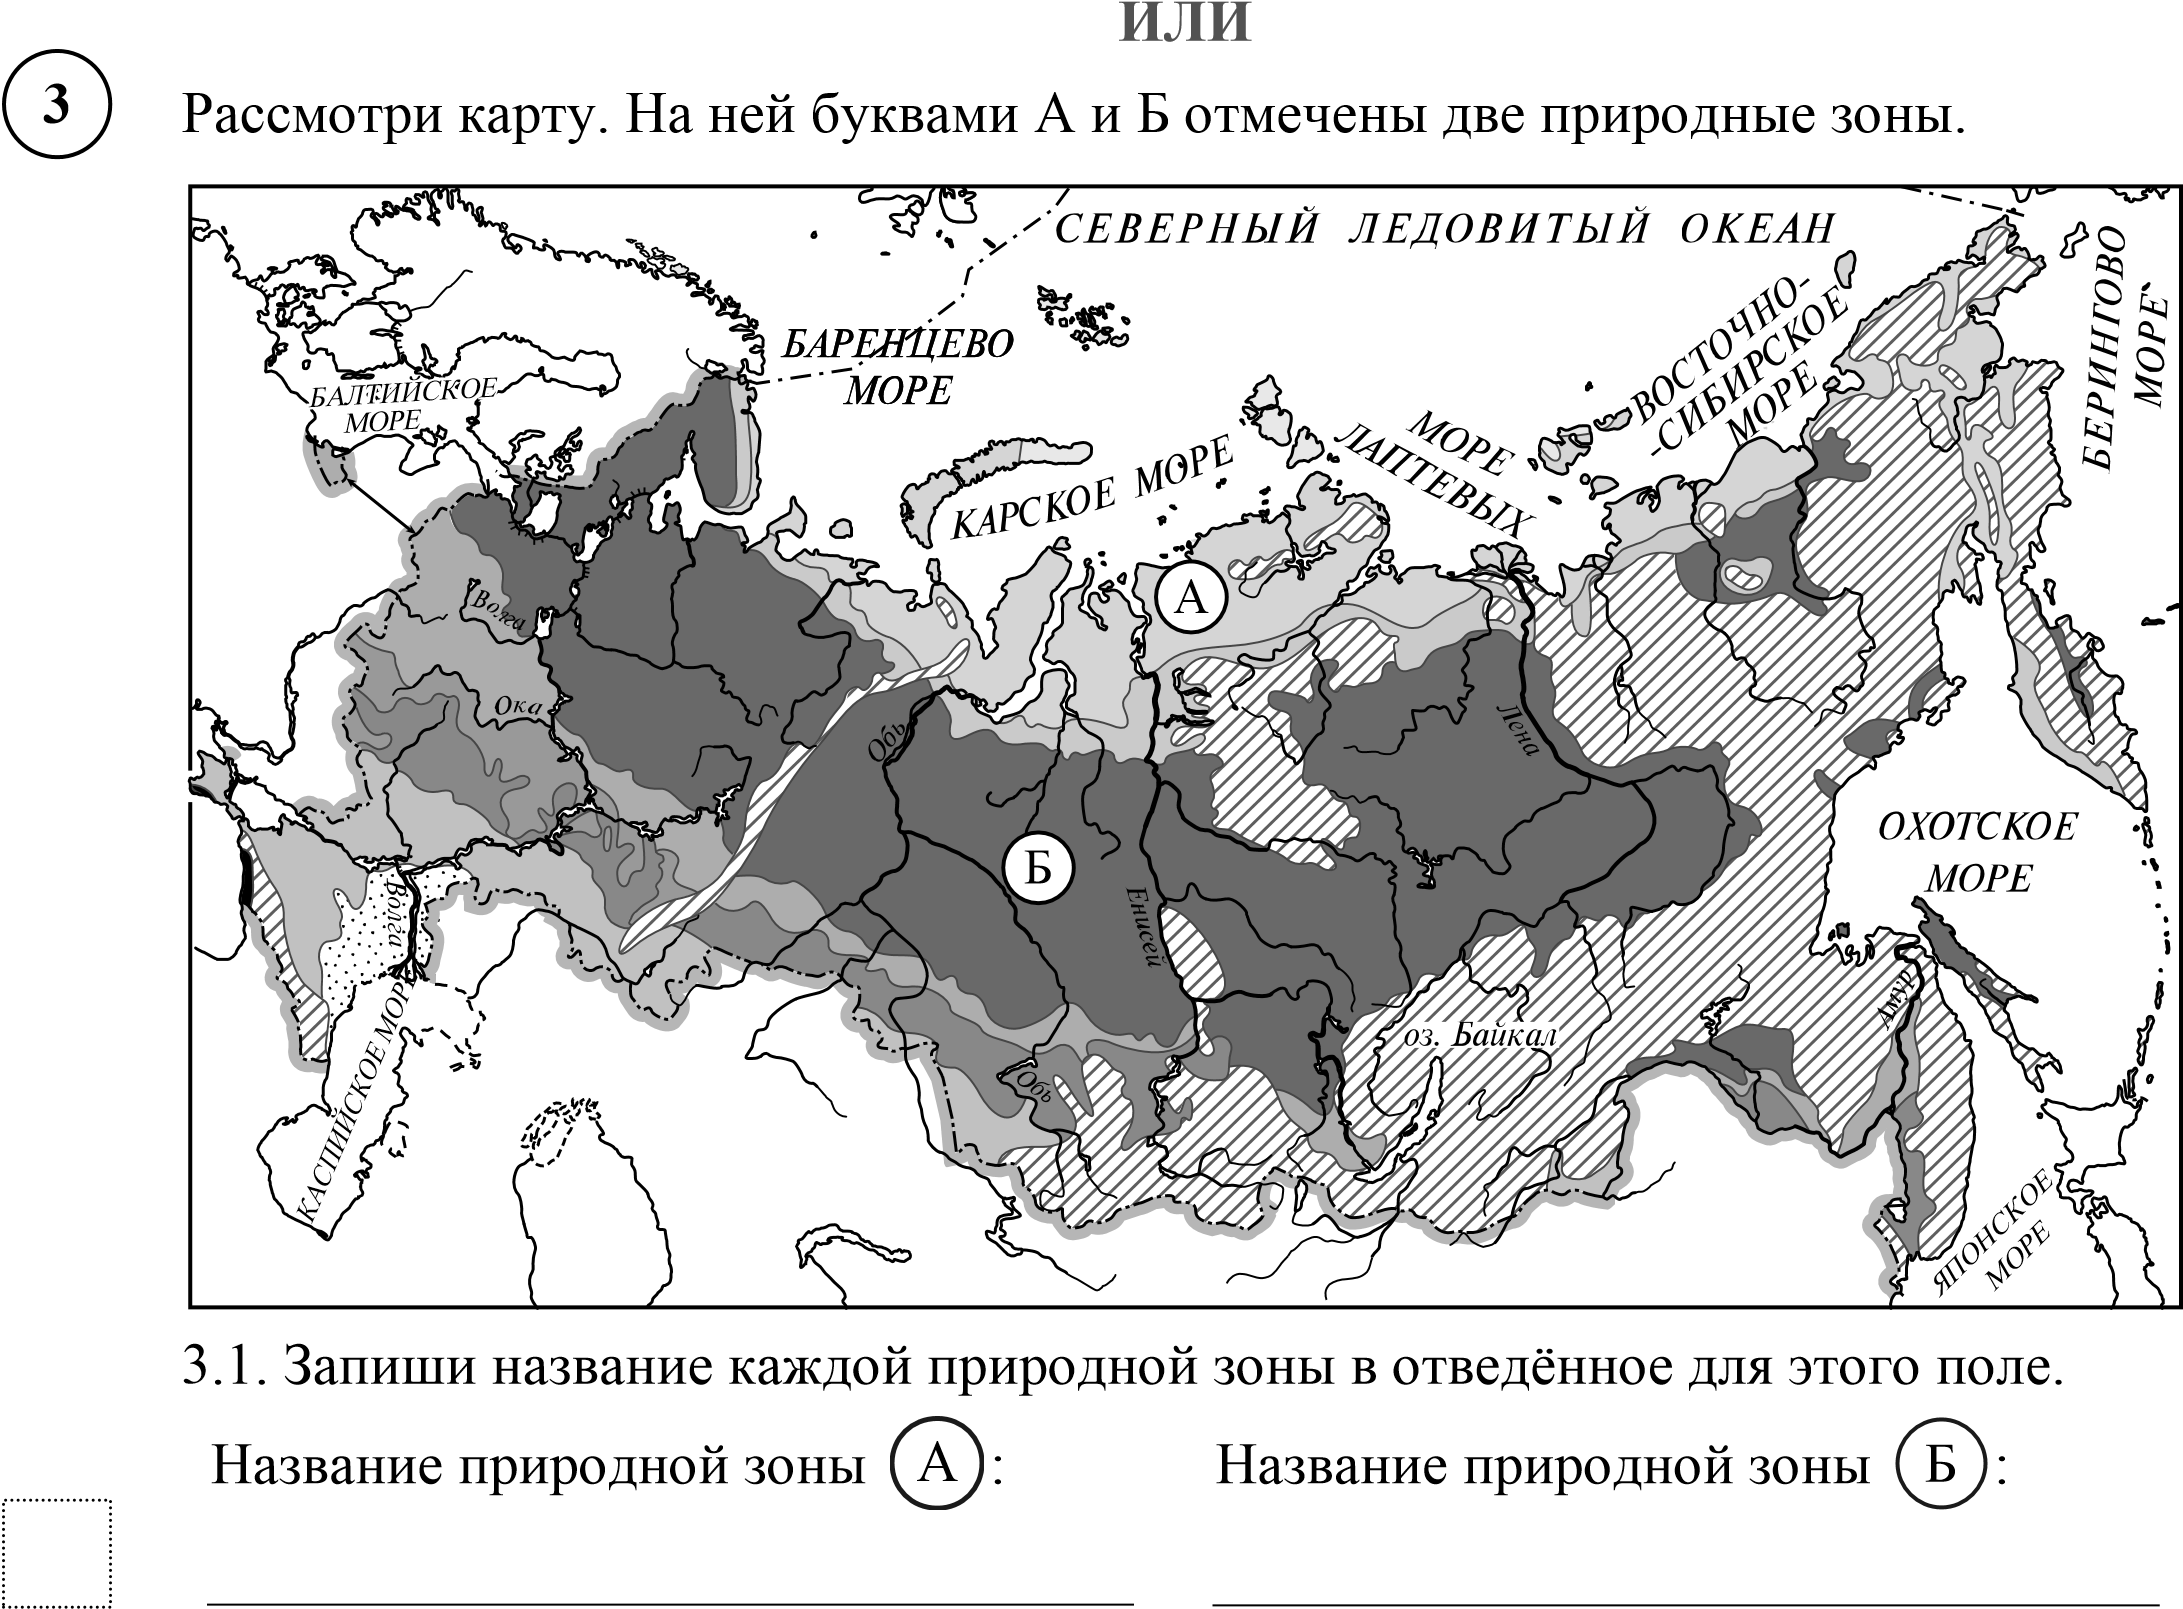 Карта природных зон России ВПР. Карта природных зон России 4 класс окружающий мир без названий. Природные зоны России 4 класс окружающий мир черно белая карта. Карта природных зон России 4 класс черно белая. Впр рф 4 класс